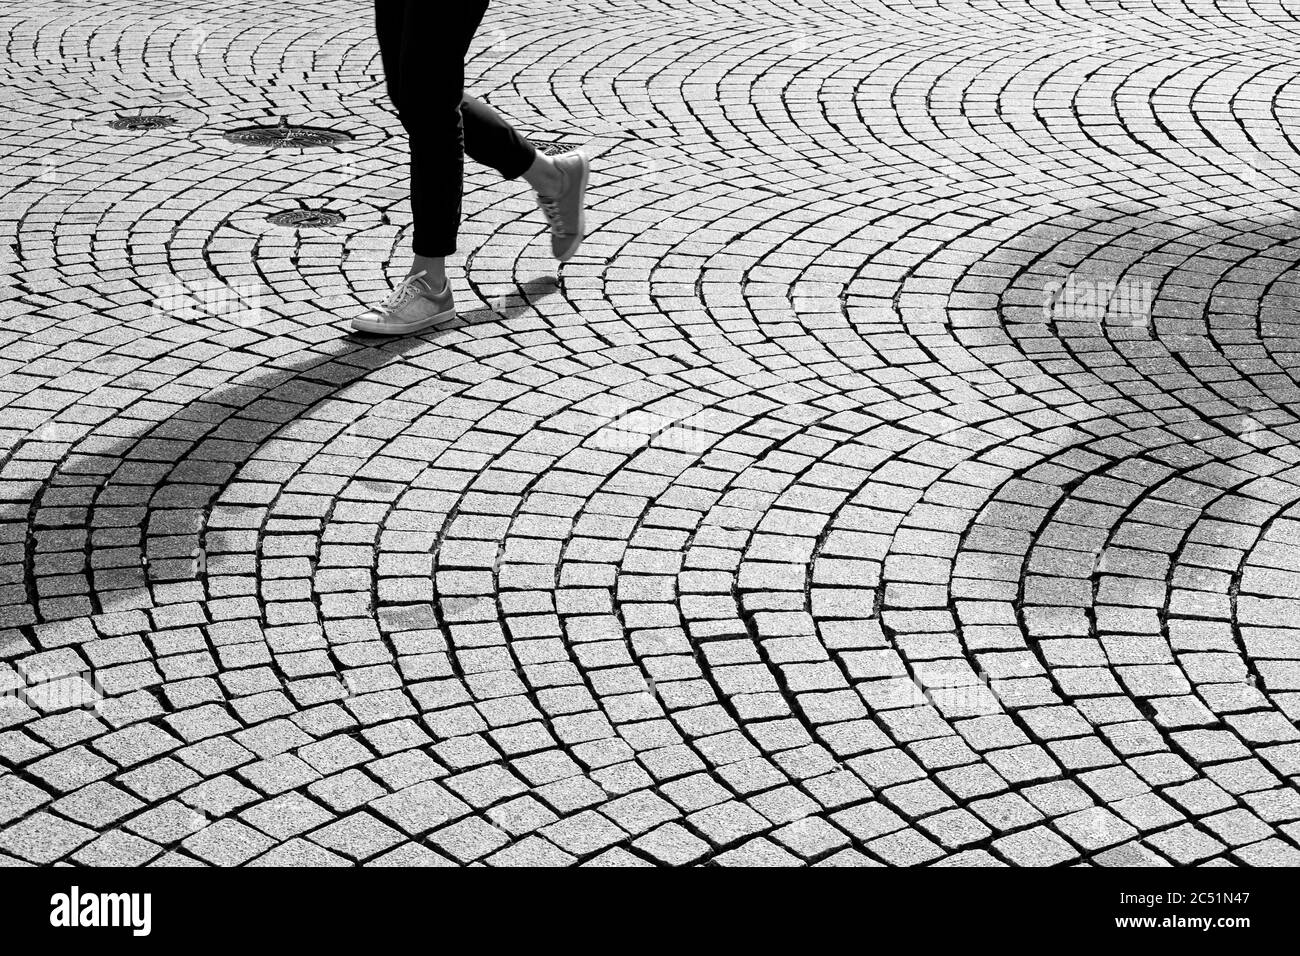 Piedi e gambe di una persona che cammina su strade acciottolate Foto Stock